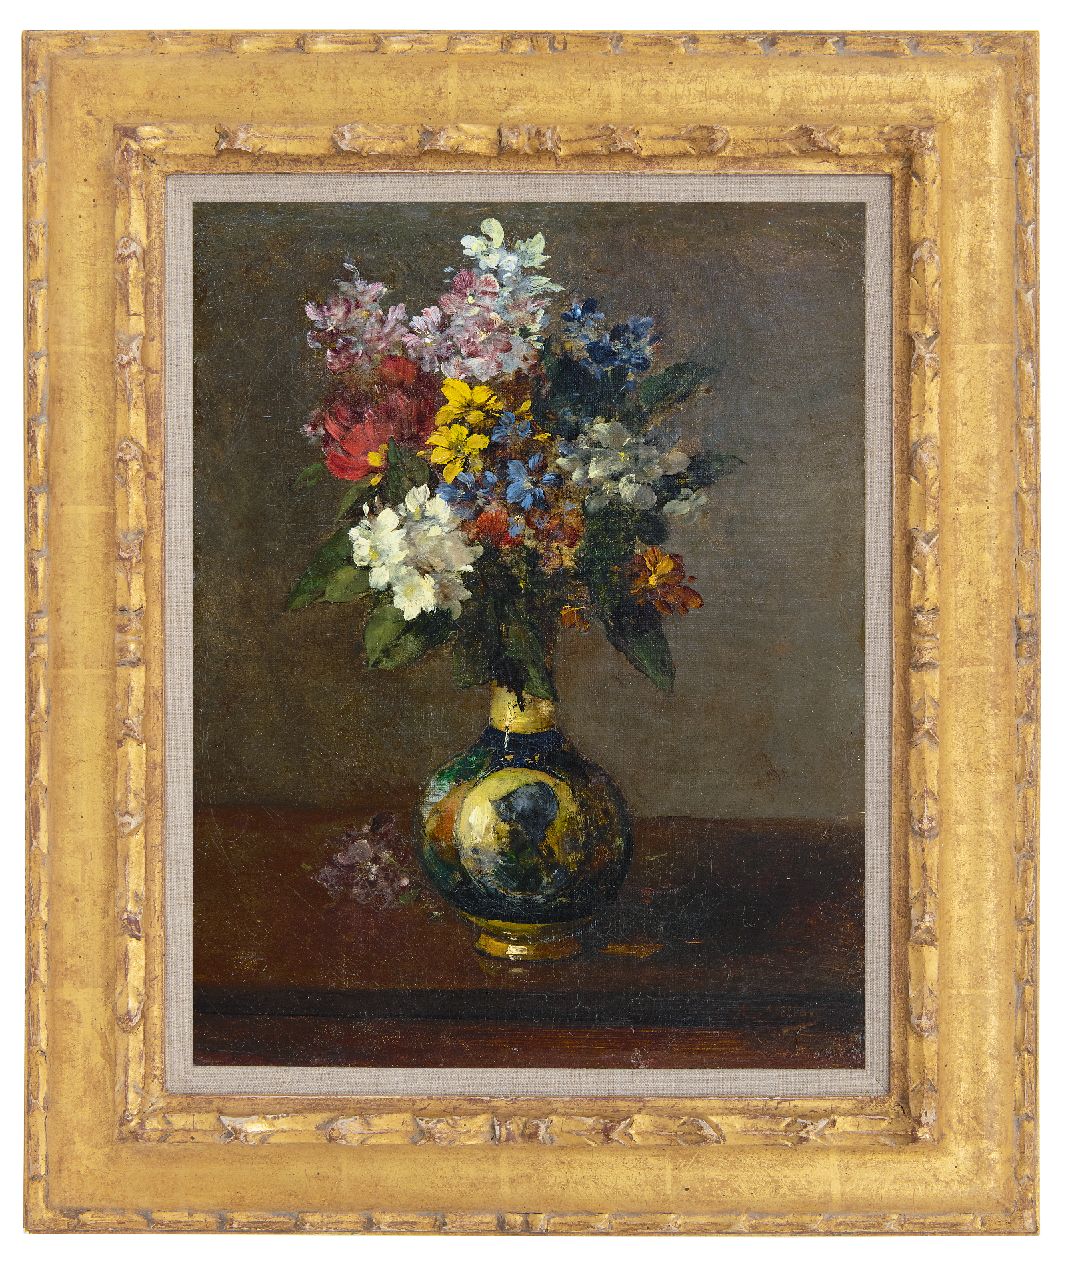 Vollon A.  | Antoine Vollon | Schilderijen te koop aangeboden | Bloemen in een vaas, olieverf op doek 41,4 x 32,0 cm, gesigneerd rechtsonder